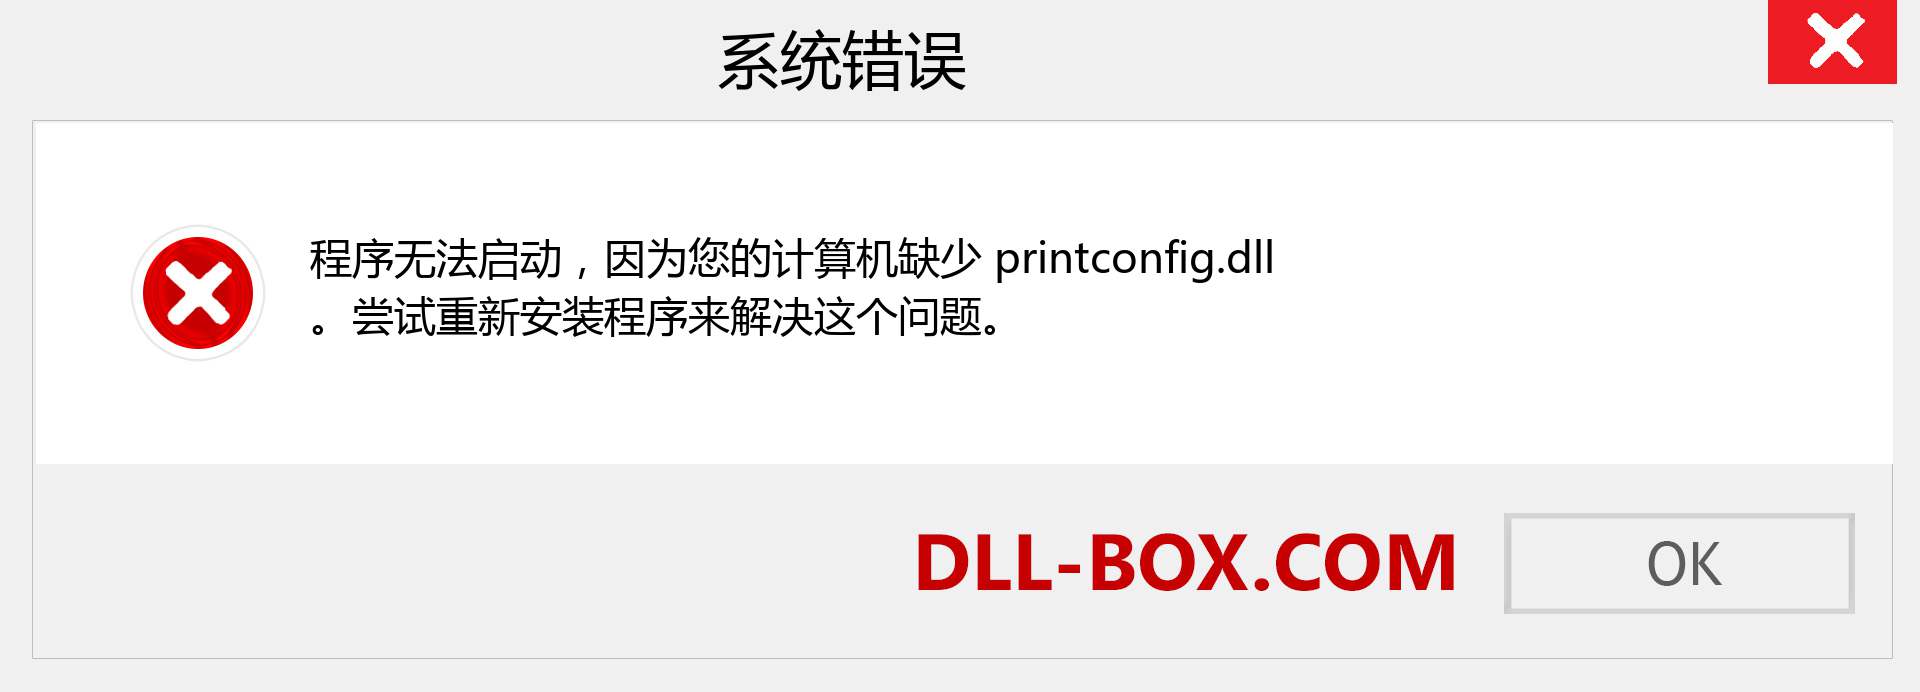 printconfig.dll 文件丢失？。 适用于 Windows 7、8、10 的下载 - 修复 Windows、照片、图像上的 printconfig dll 丢失错误